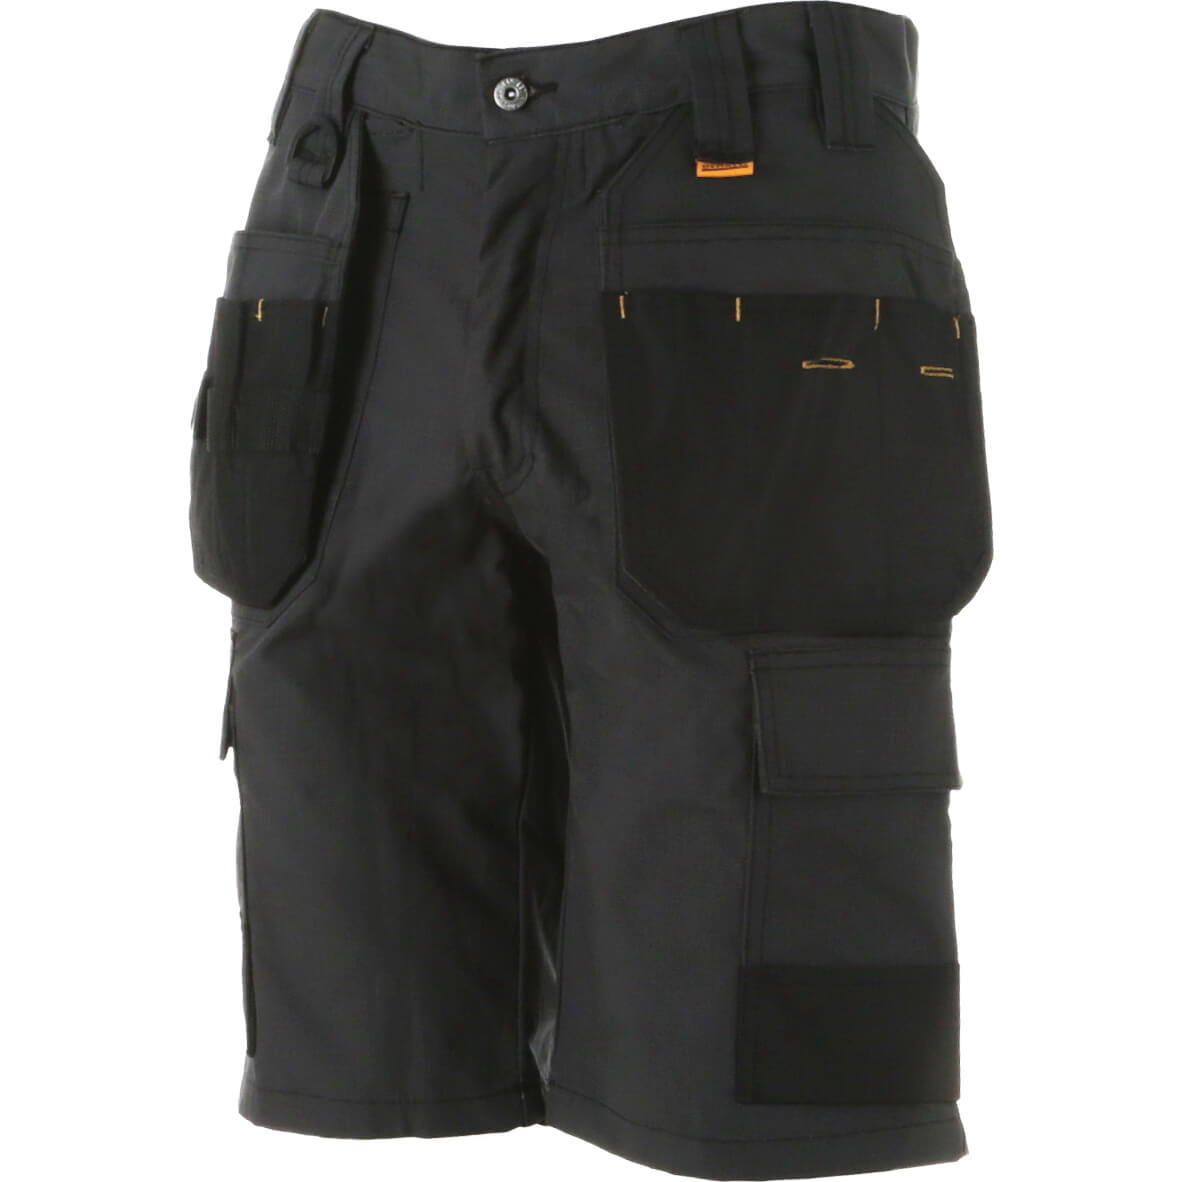 Photos - Safety Equipment DeWALT Cheverley Ripstop Multi Pocket Work Shorts Grey 32" 